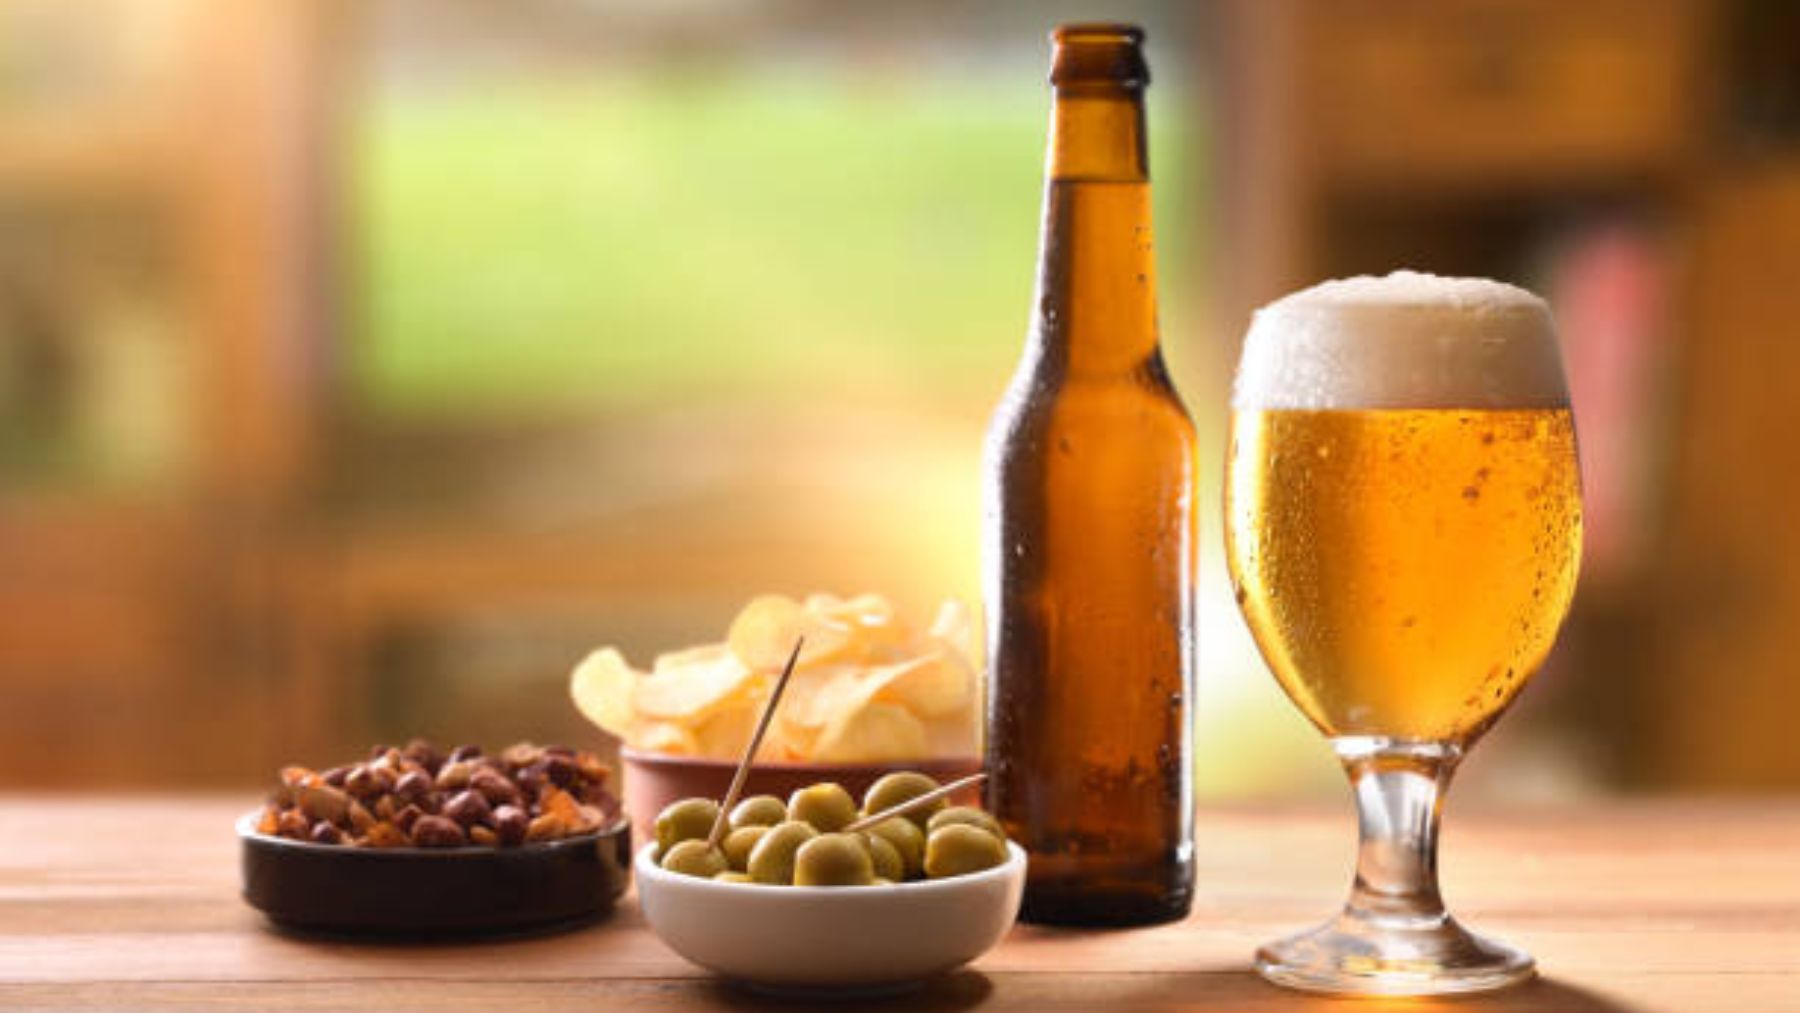 Las cervezas favoritas de los españoles según cada comunidad autónoma